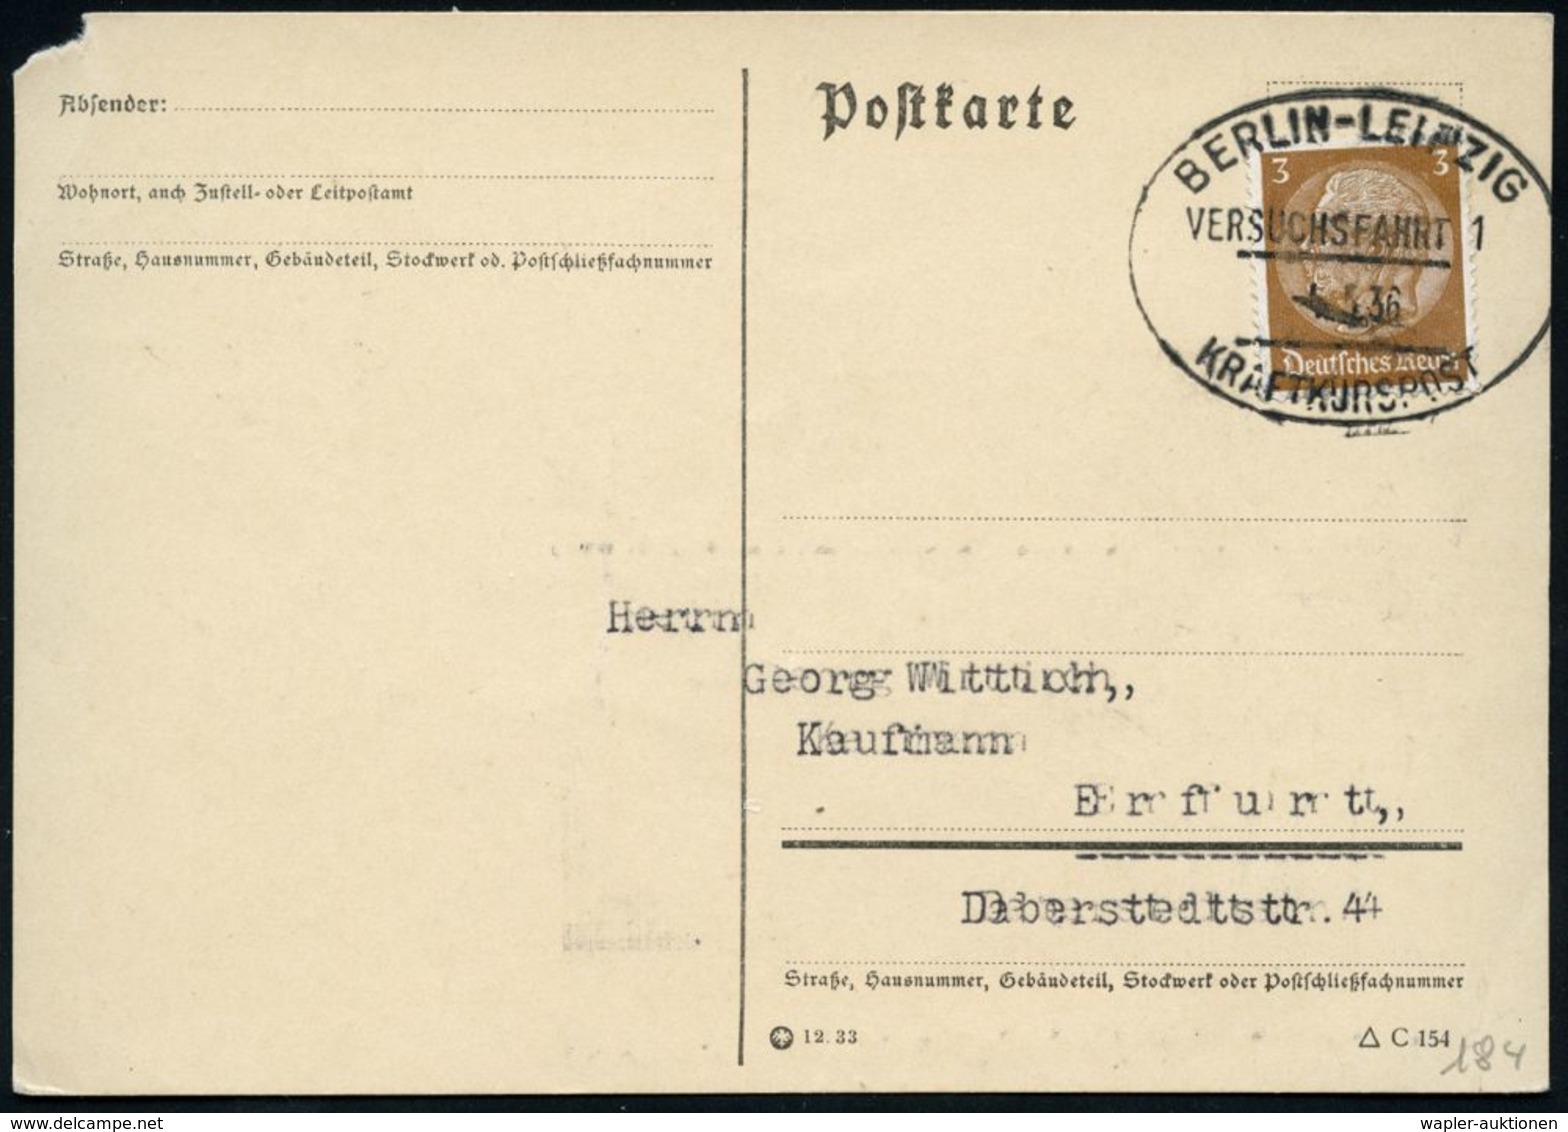 BERLIN-LEIPZIG/ VERSUCHSFAHRT 1/ KRAFTKURSPOST 1936 (5.5.) Seltener Oval-St Von Der Eröffnungsfahrt! , Inl.-Karte + Kopi - Coches